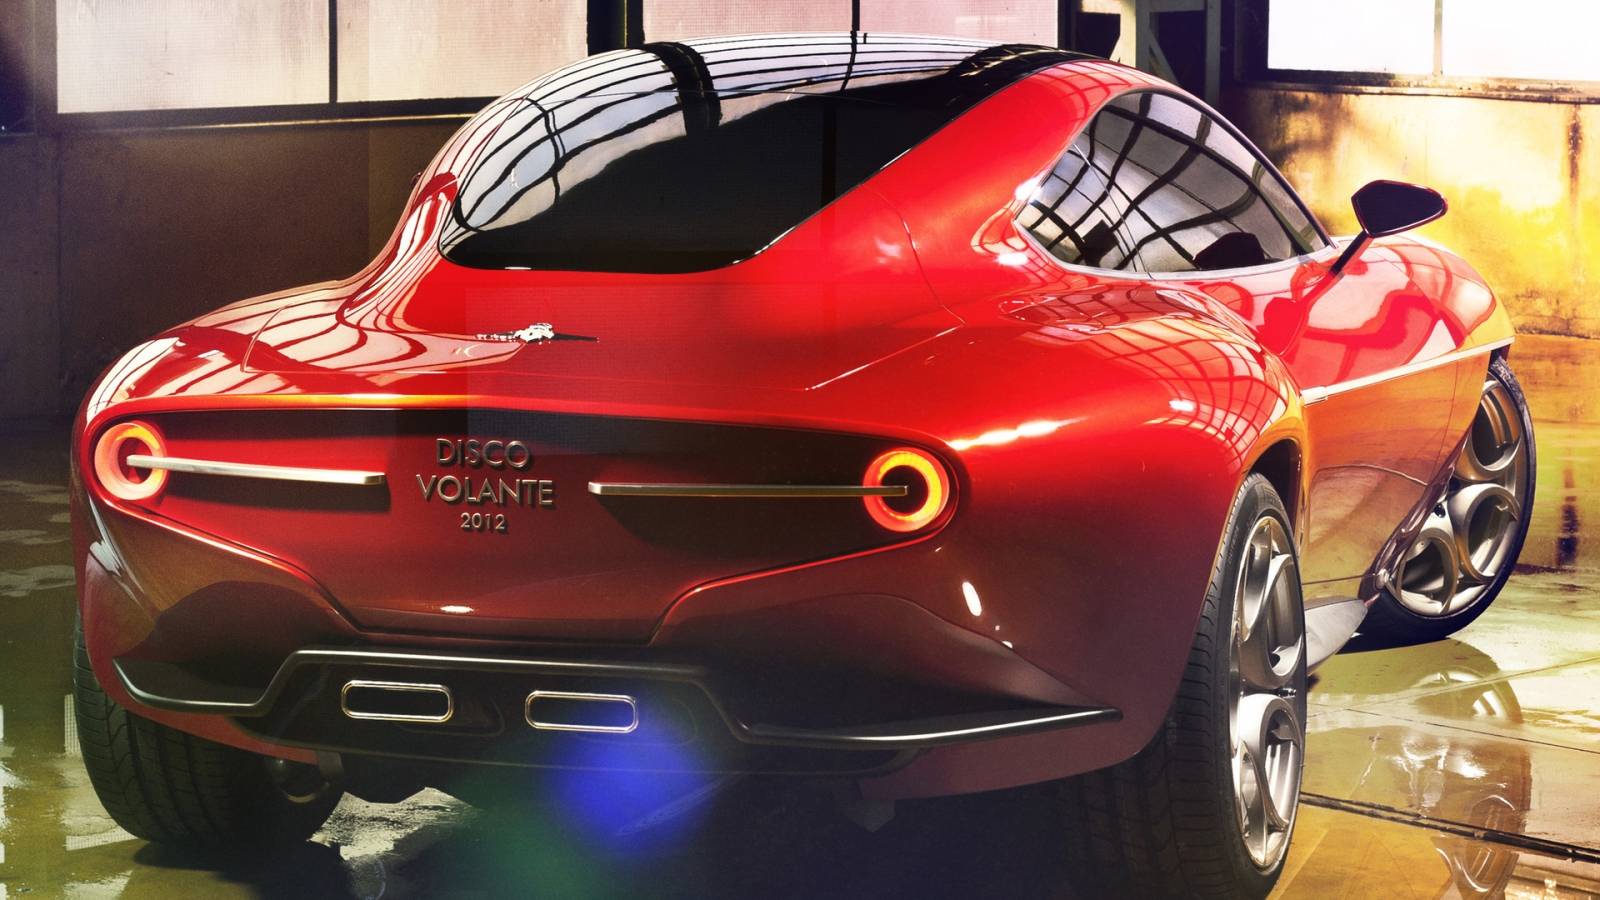 Alfa Romeo Disco Volante for 1600 x 900 HDTV resolution